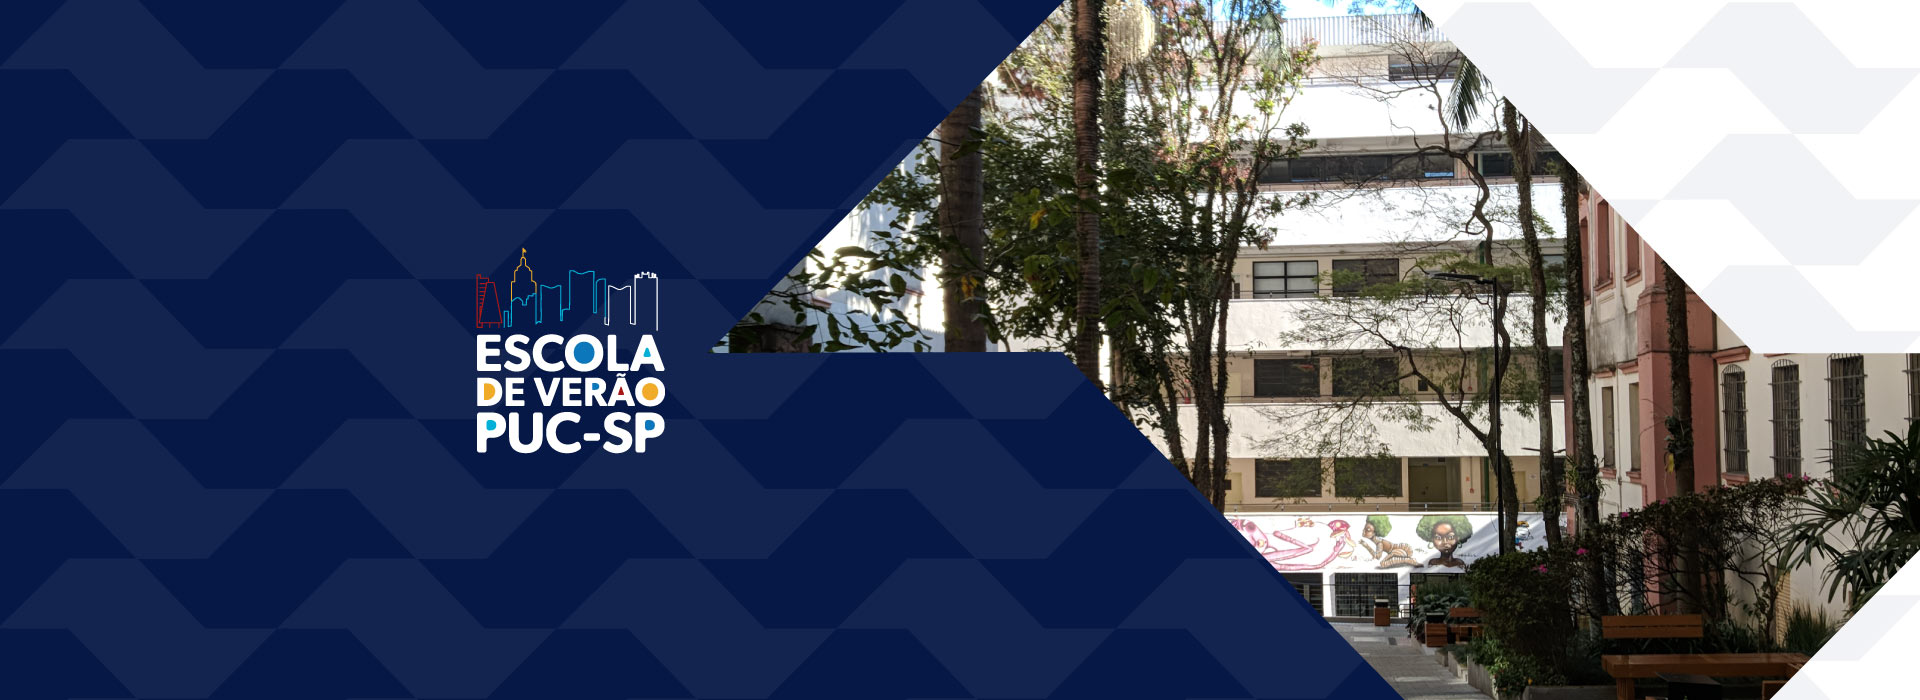 Imagem ilustrativa com o logo do projeto escola de verão e imagem do campus Monte Alegre da PUC-SP